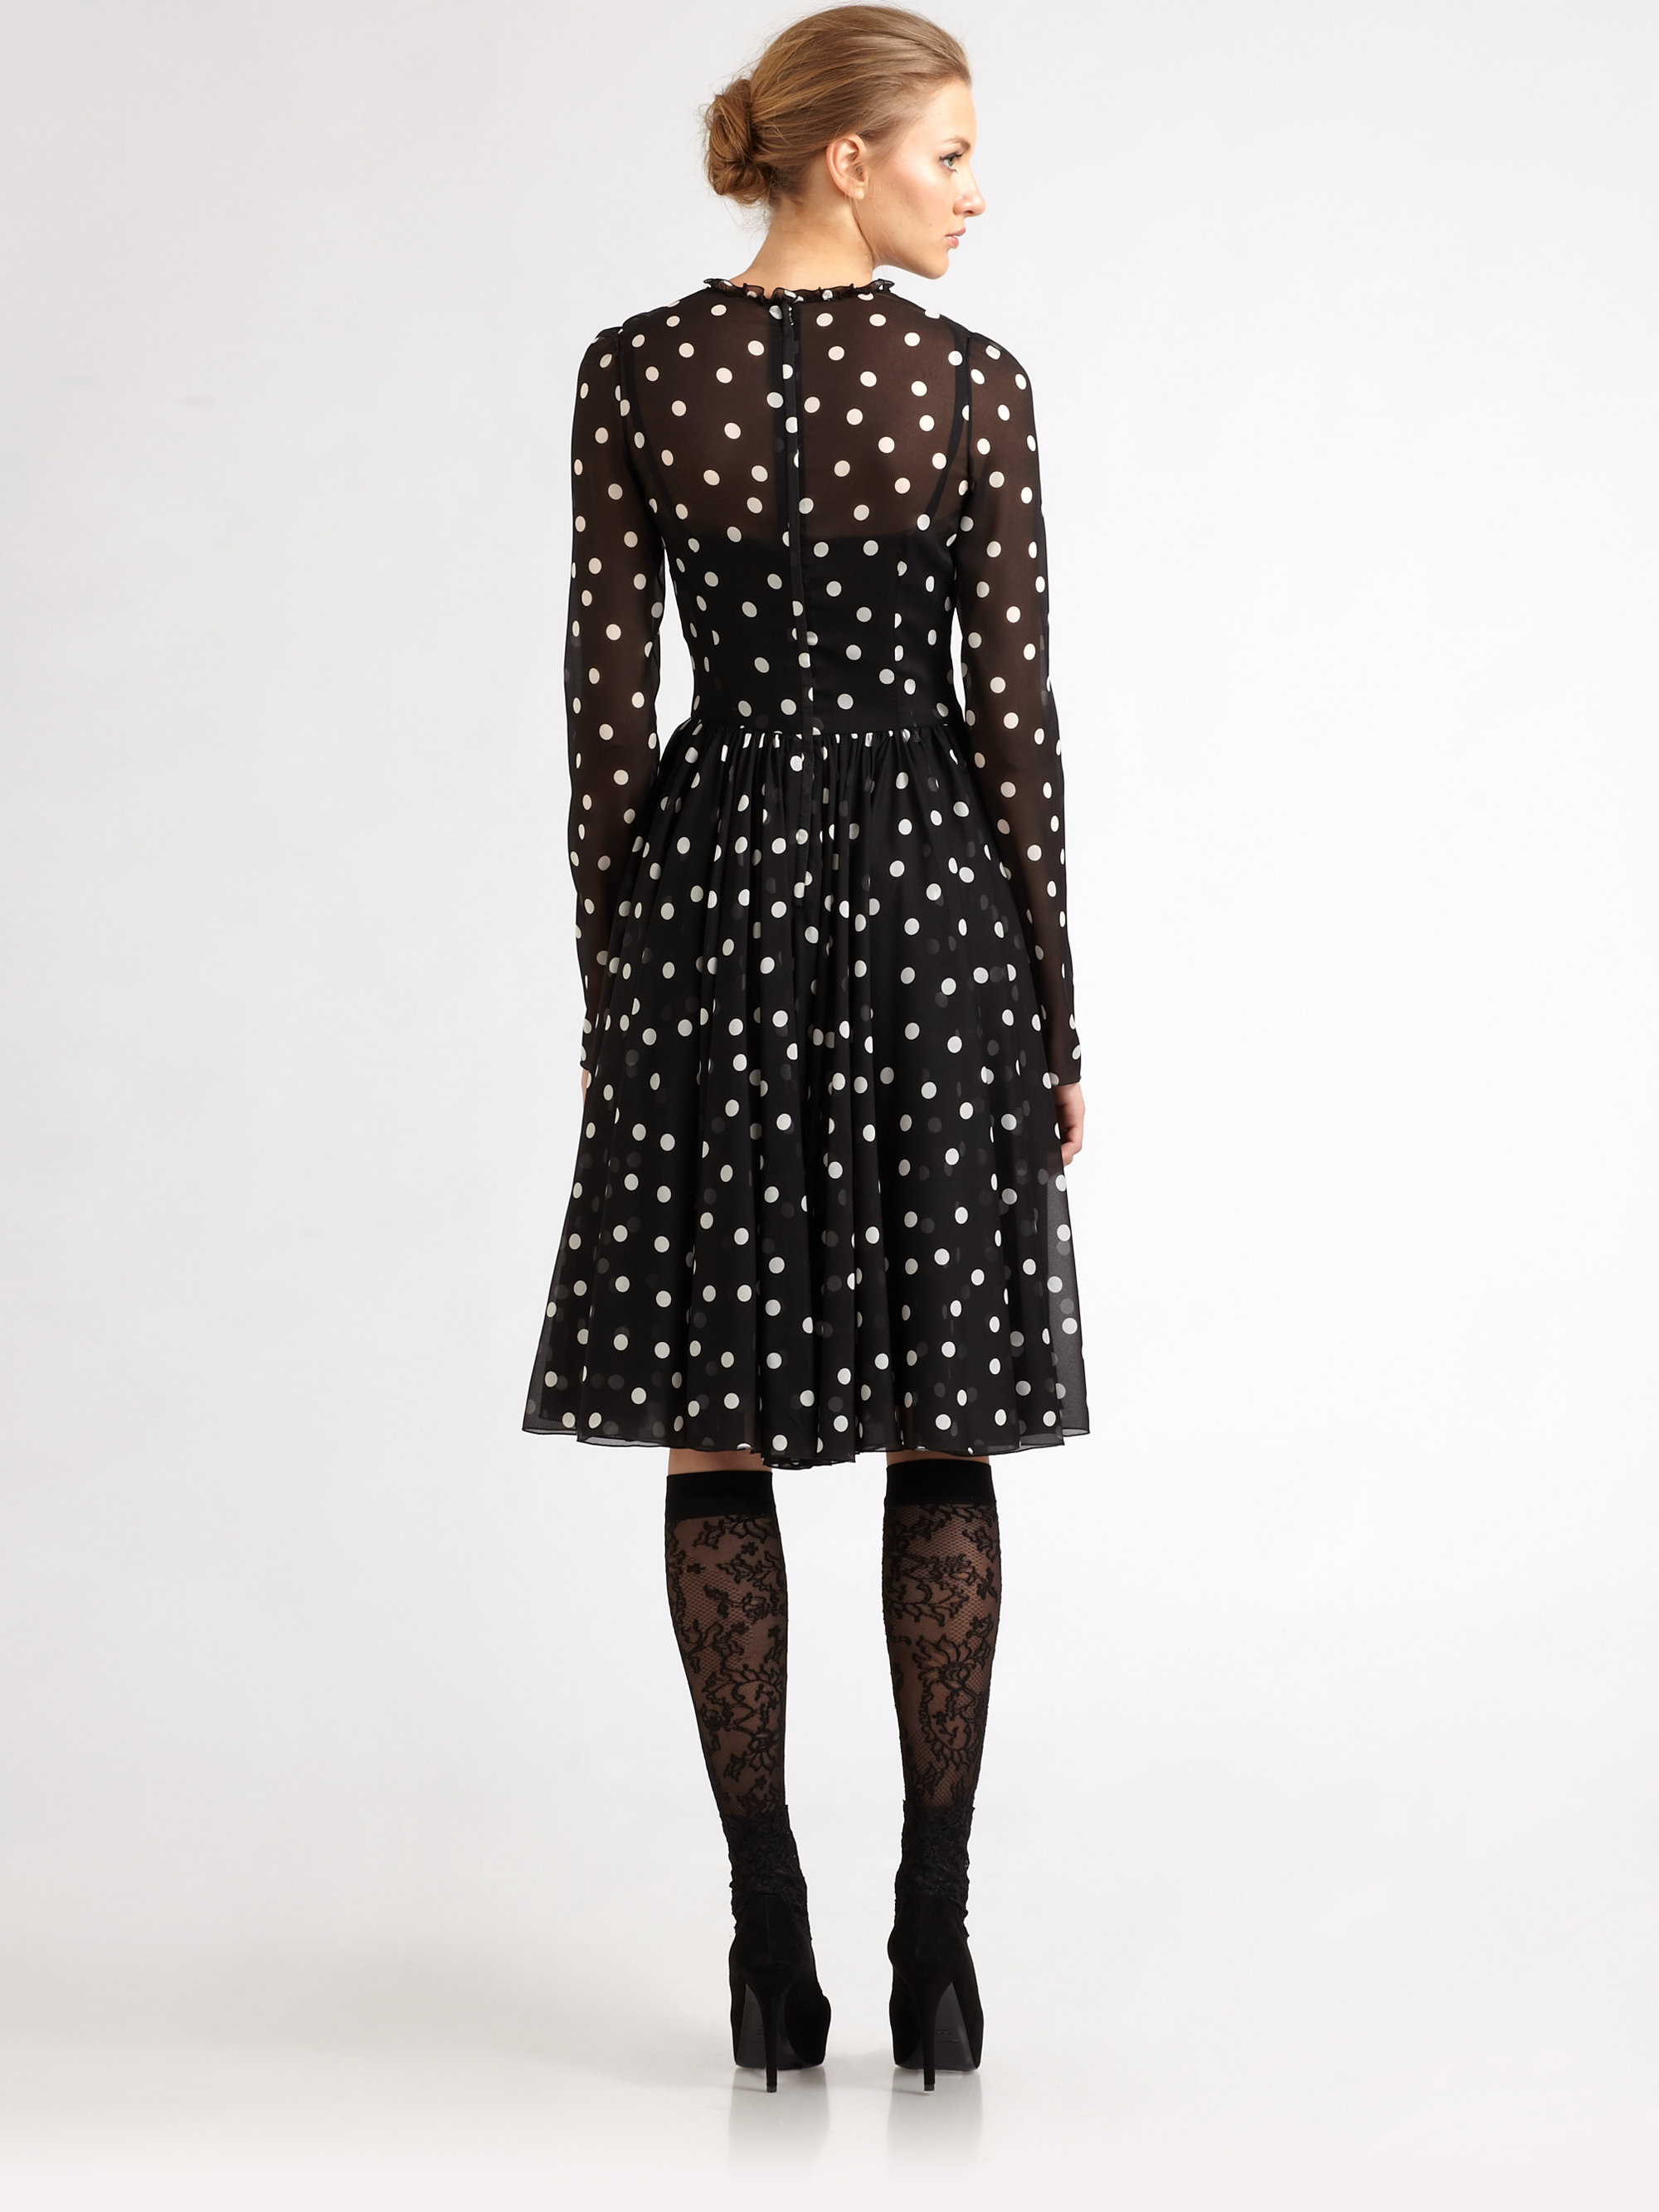 Dolce & Gabbana Silk Polka Dot Dress in Black | Lyst